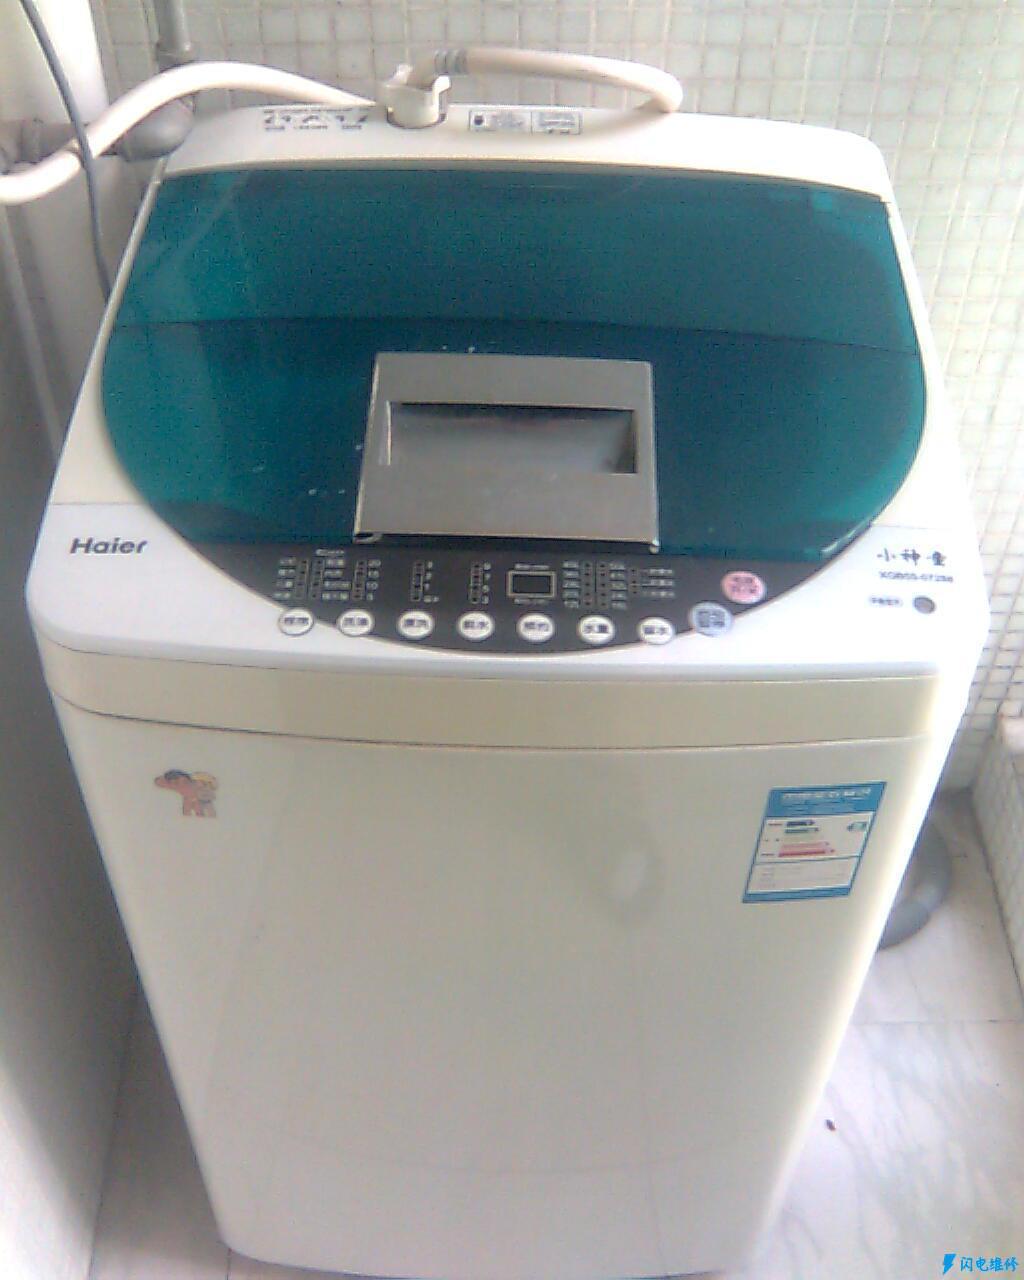 连州连州市海尔洗衣机维修服务中心